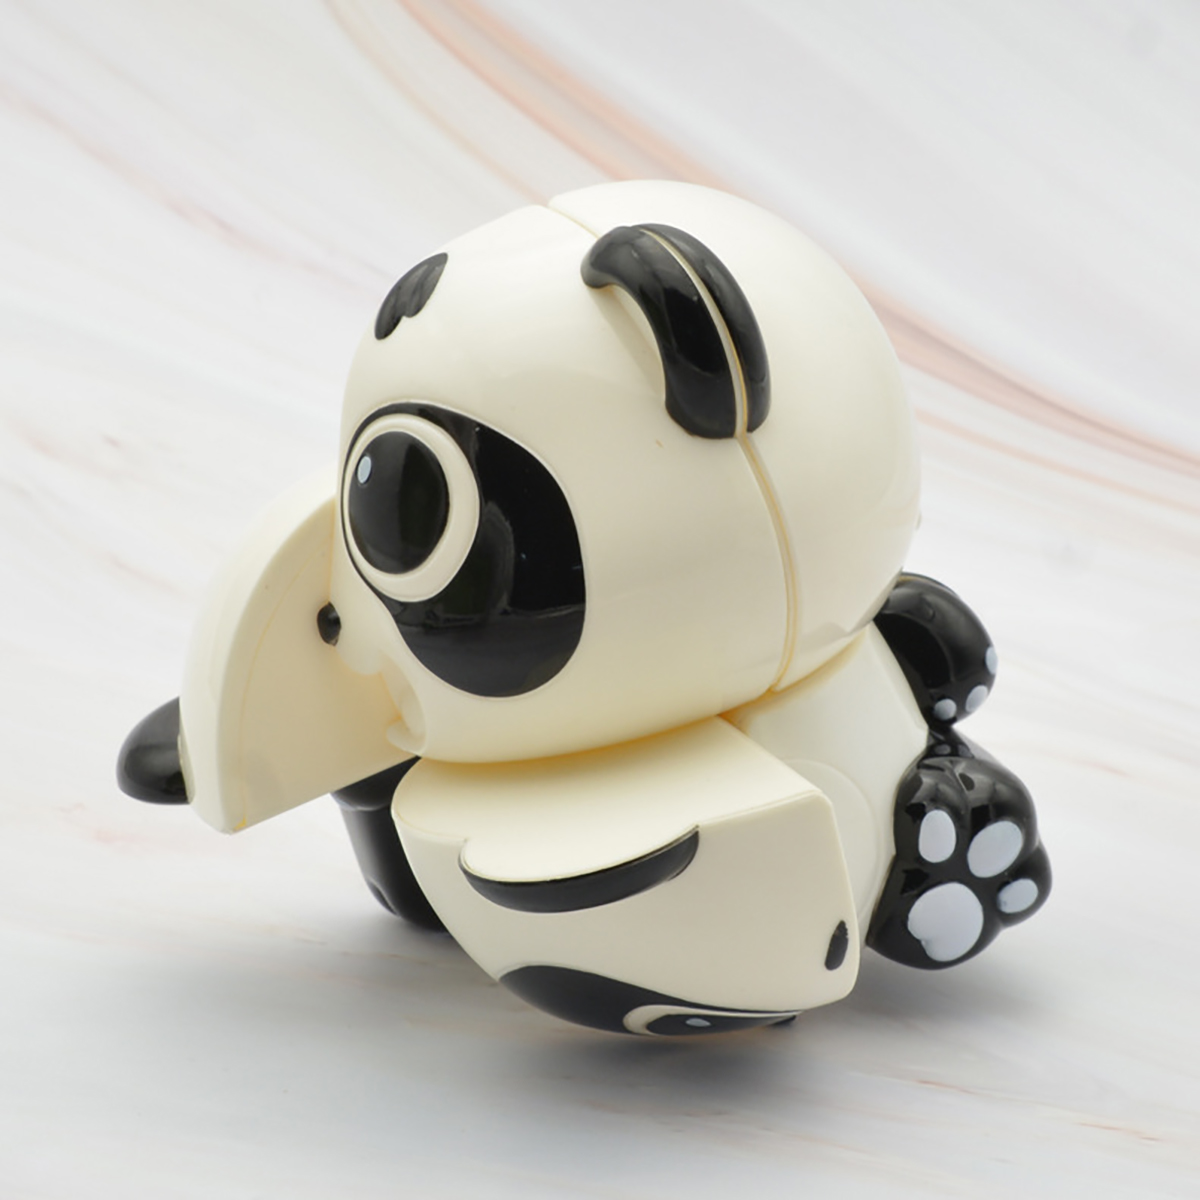 PandaTigerPenguinMouse-Animal-Cube-Puzzle-Jigsaw-Kids-Educational-Toys-Gift-1674712-5